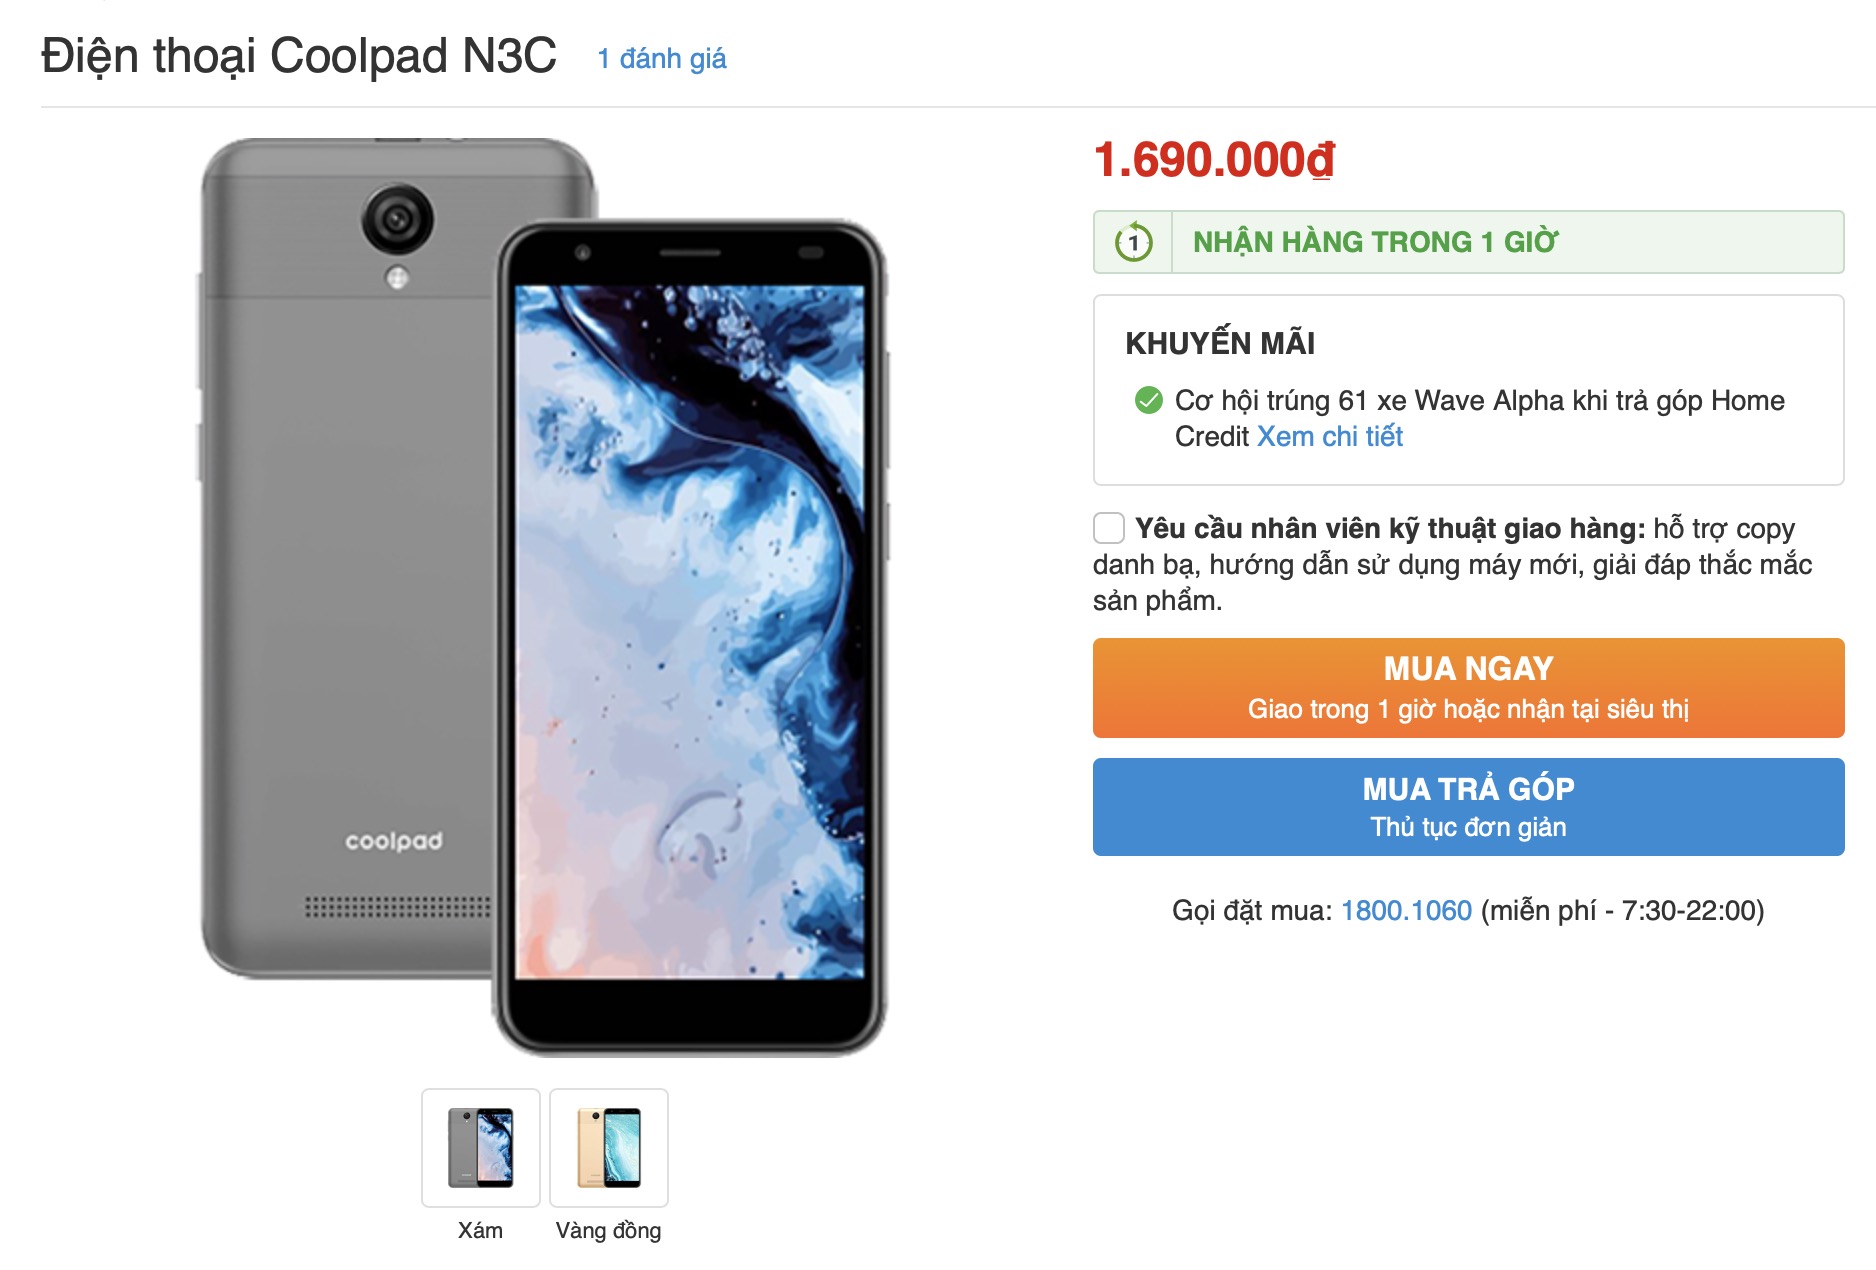 Rò rỉ hình ảnh về Coolpad N3C sắp được mở bán tại Việt Nam, chạy Android Go, giá dự kiến 1.690.000đ